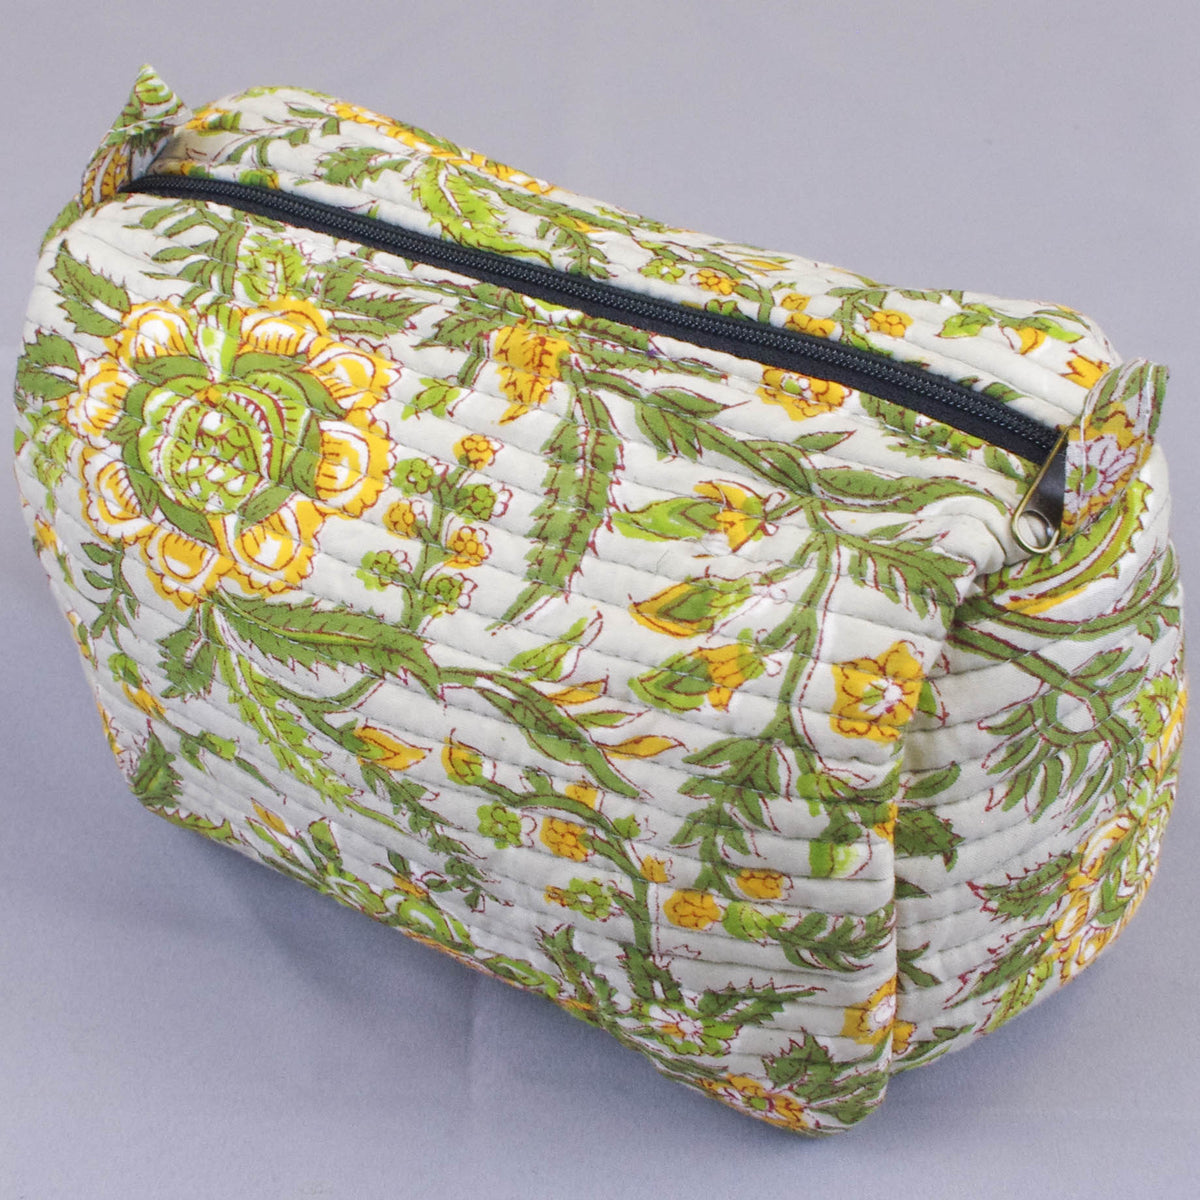 Gesteppte Kulturtasche mit Blockdruck - Grün, Gelb, Blumenmuster